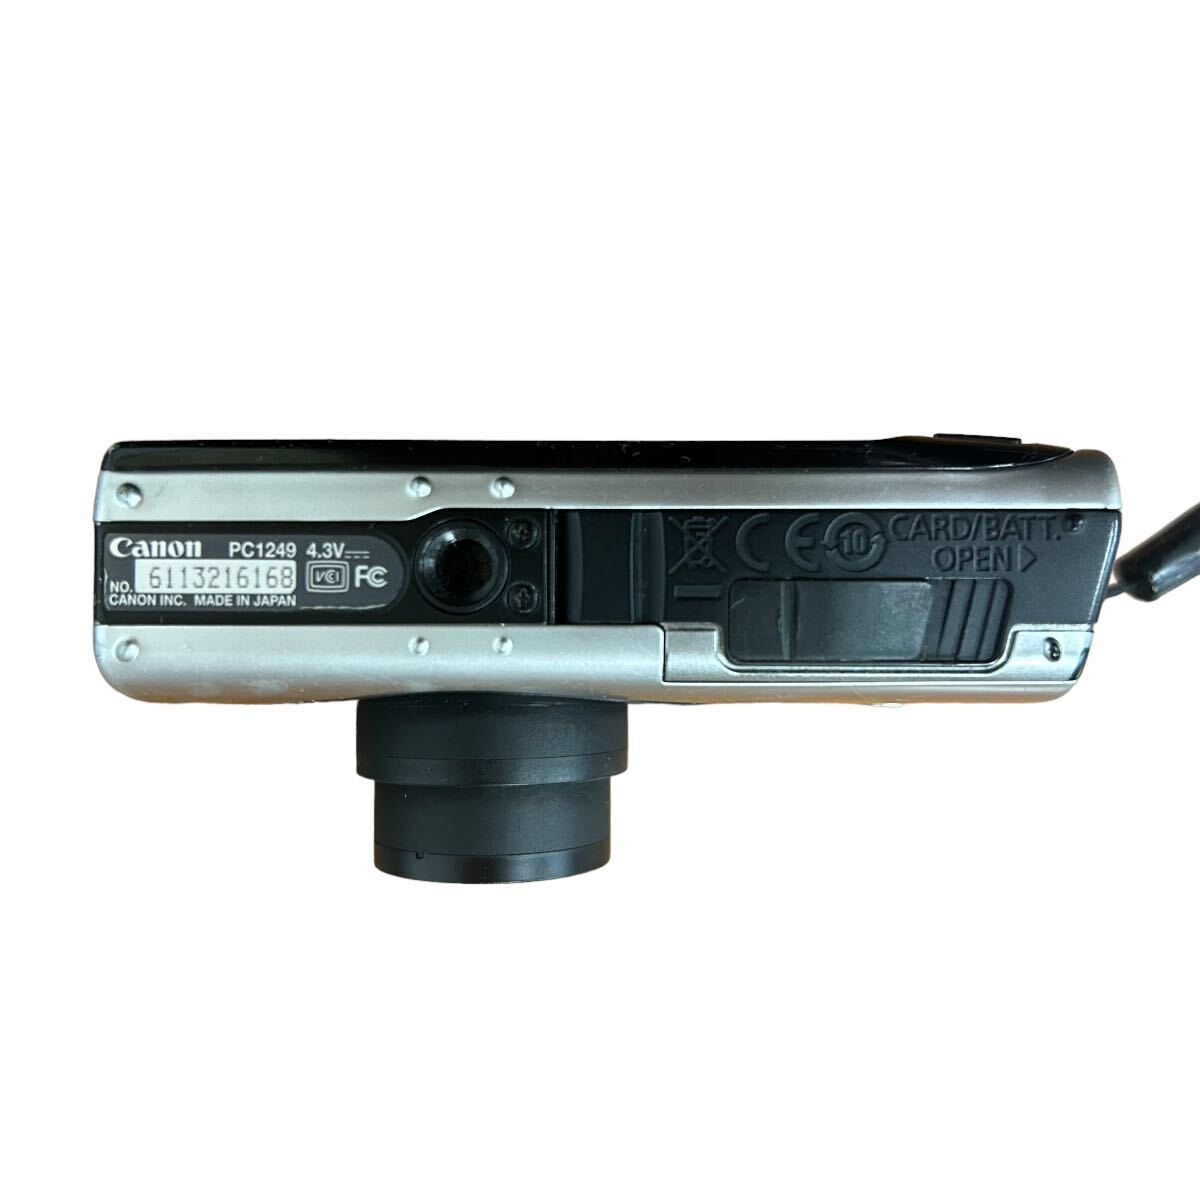 Canon キャノン IXY DIGITAL 910 IS PC1249 コンパクト デジタルカメラ 純正バッテリー付 デジカメ イクシー_画像6